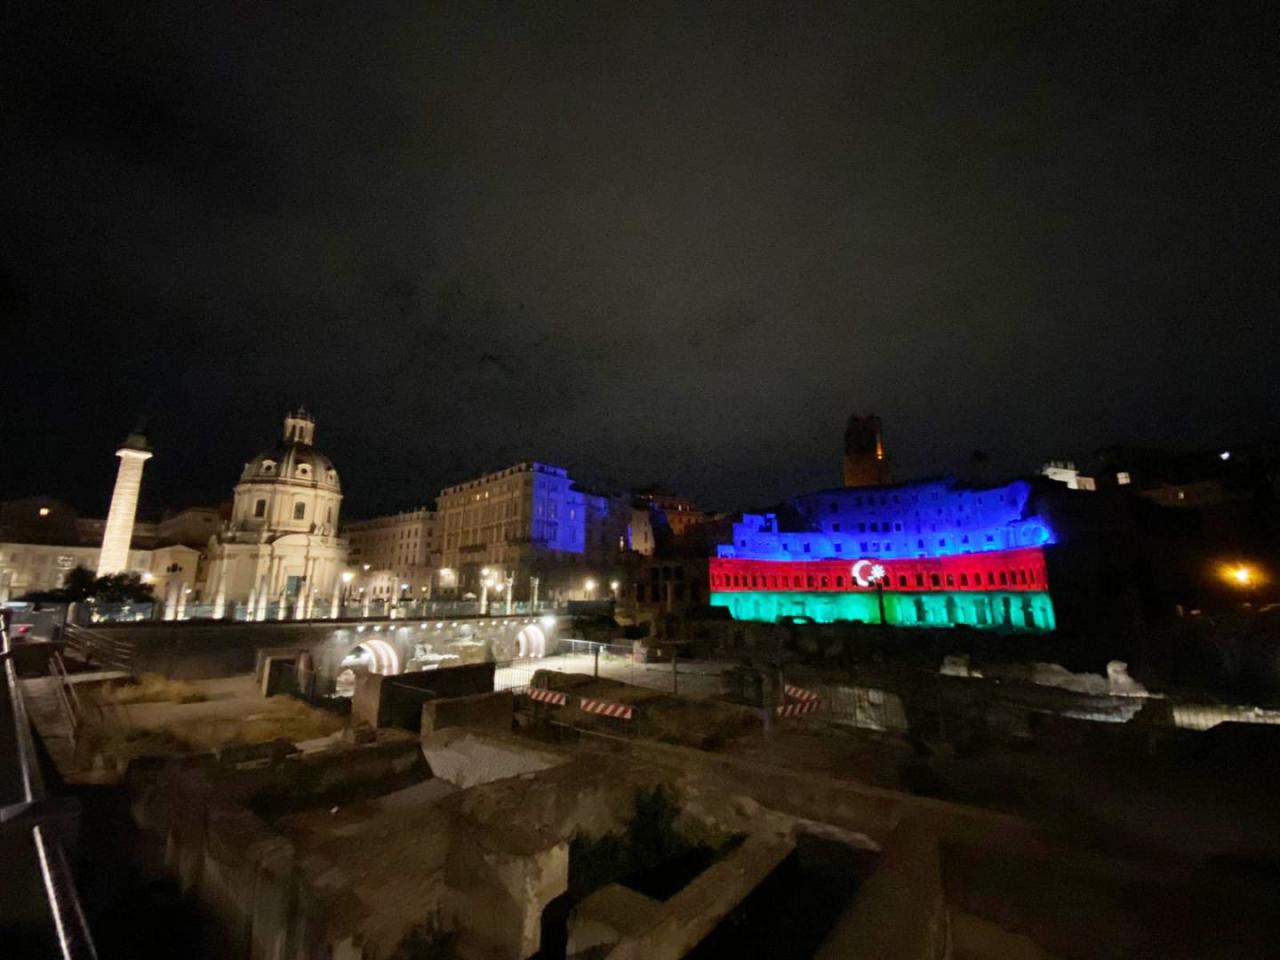 Монументальный комплекс Mercati di Traiano Древнего Рима освещен цветами флага Азербайджана